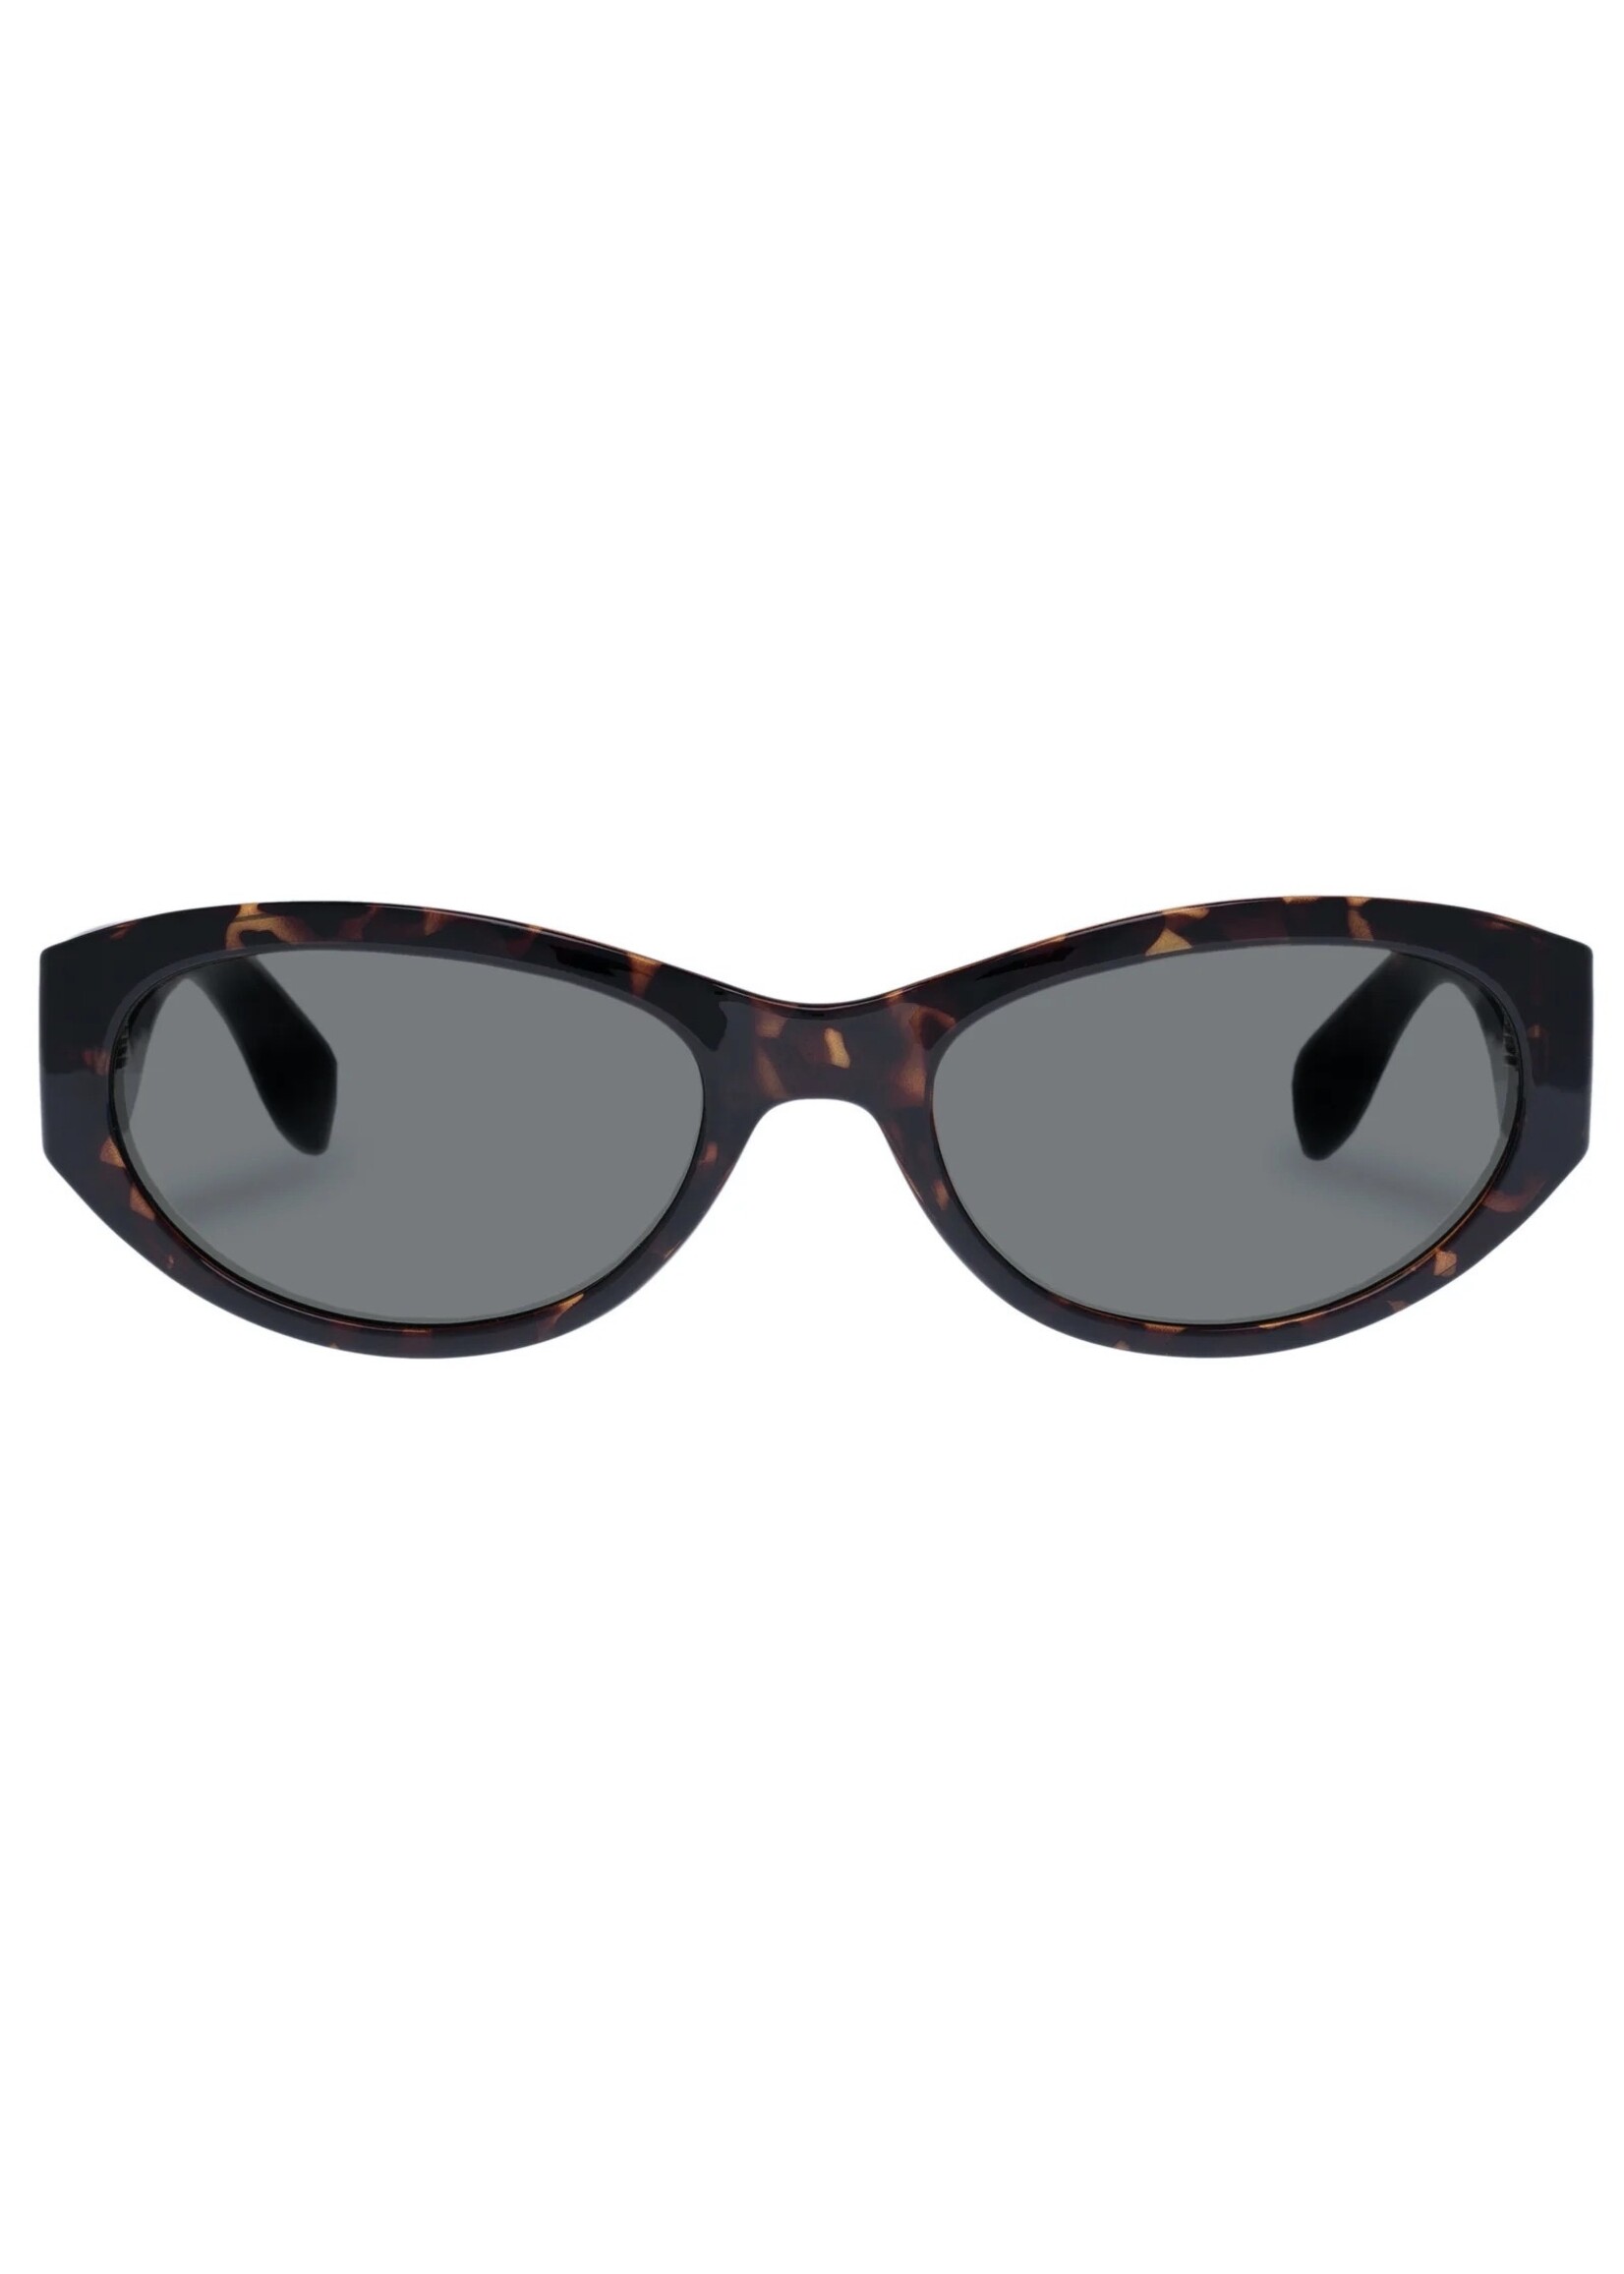 Le Specs Sunglasses "Polywrap" by LESPECS